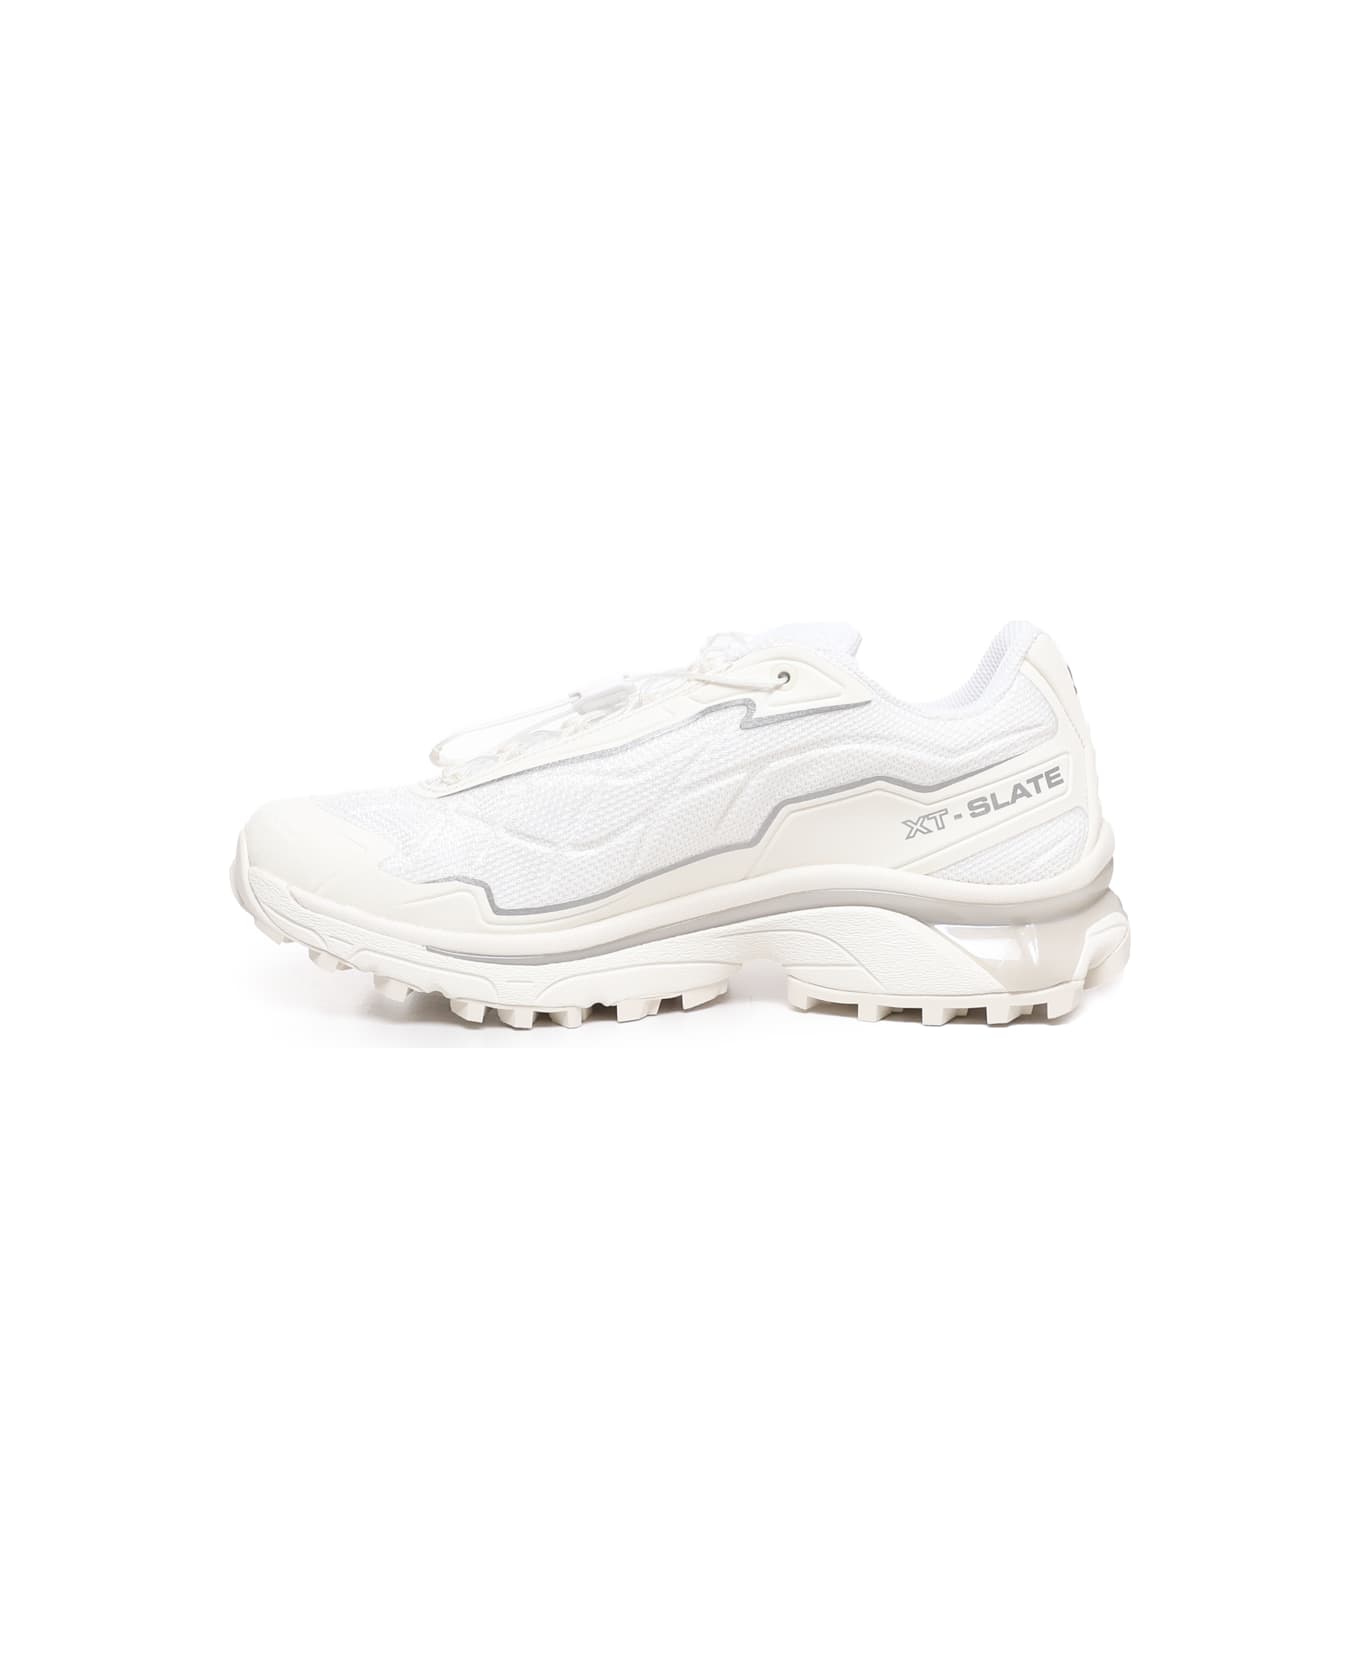 Salomon Xt-slate Sneakers - White スニーカー